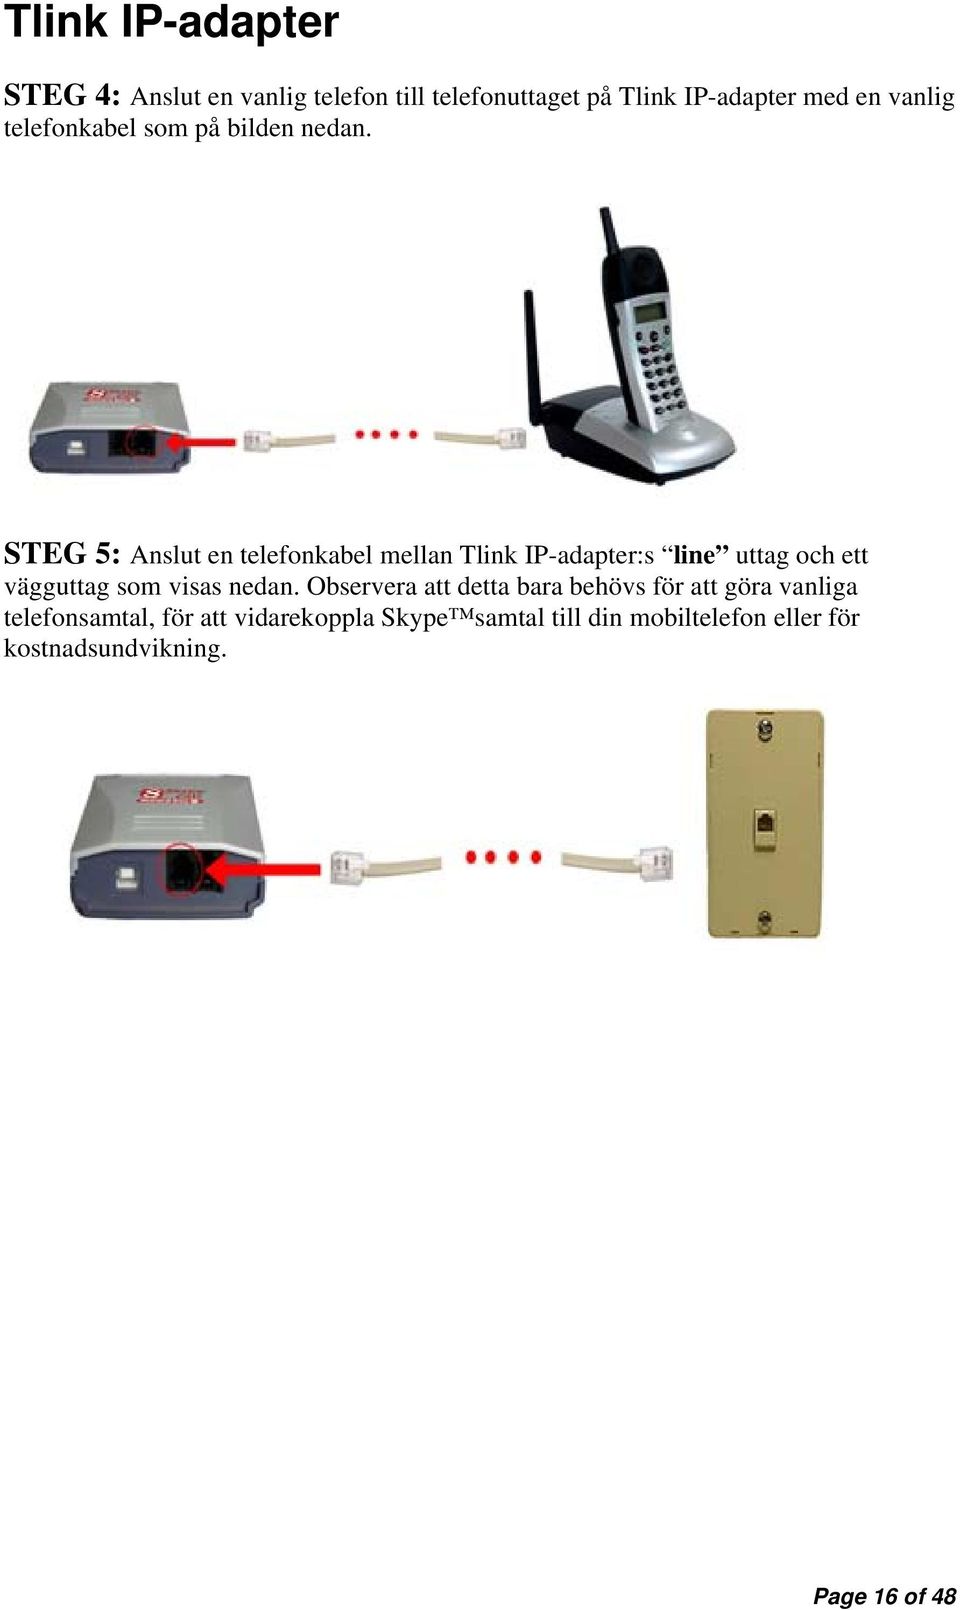 STEG 5: Anslut en telefonkabel mellan Tlink IP-adapter:s line uttag och ett vägguttag som visas